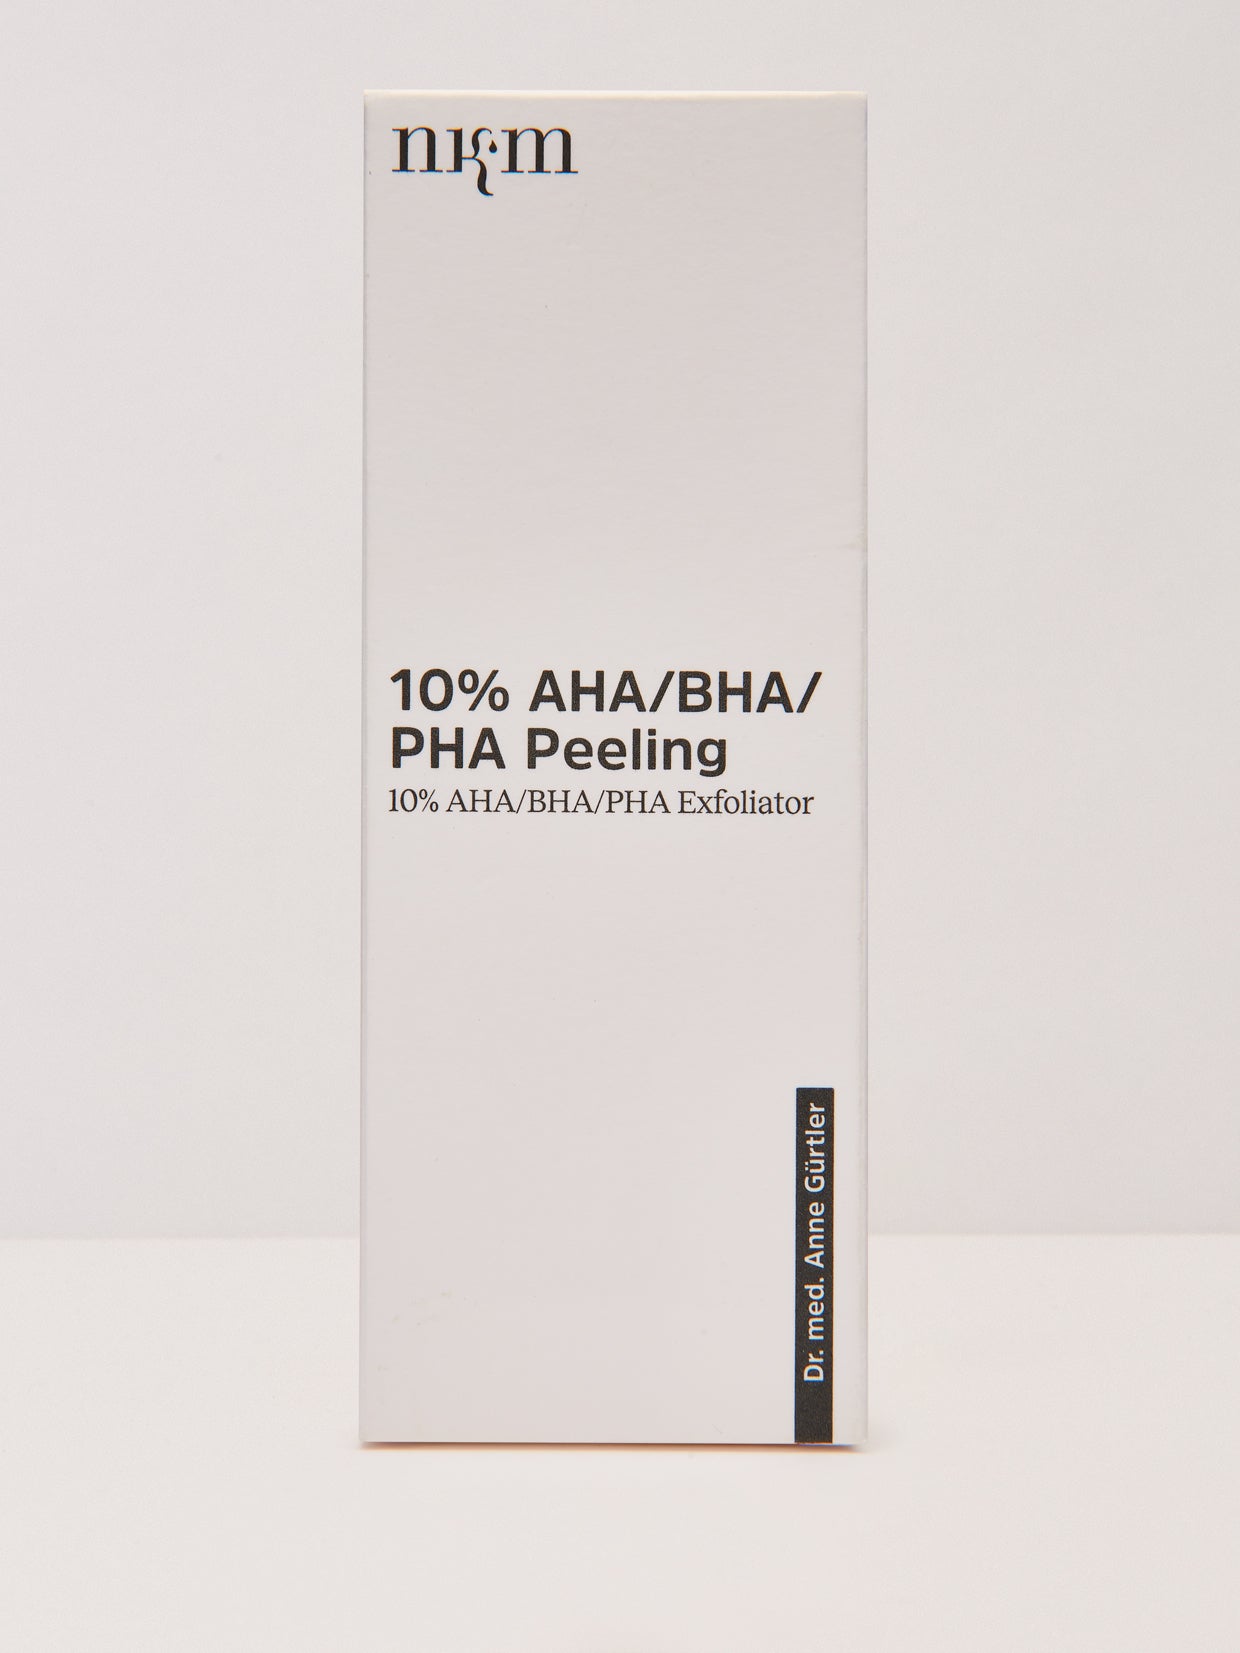 10% AHA/BHA/PHA Peeling